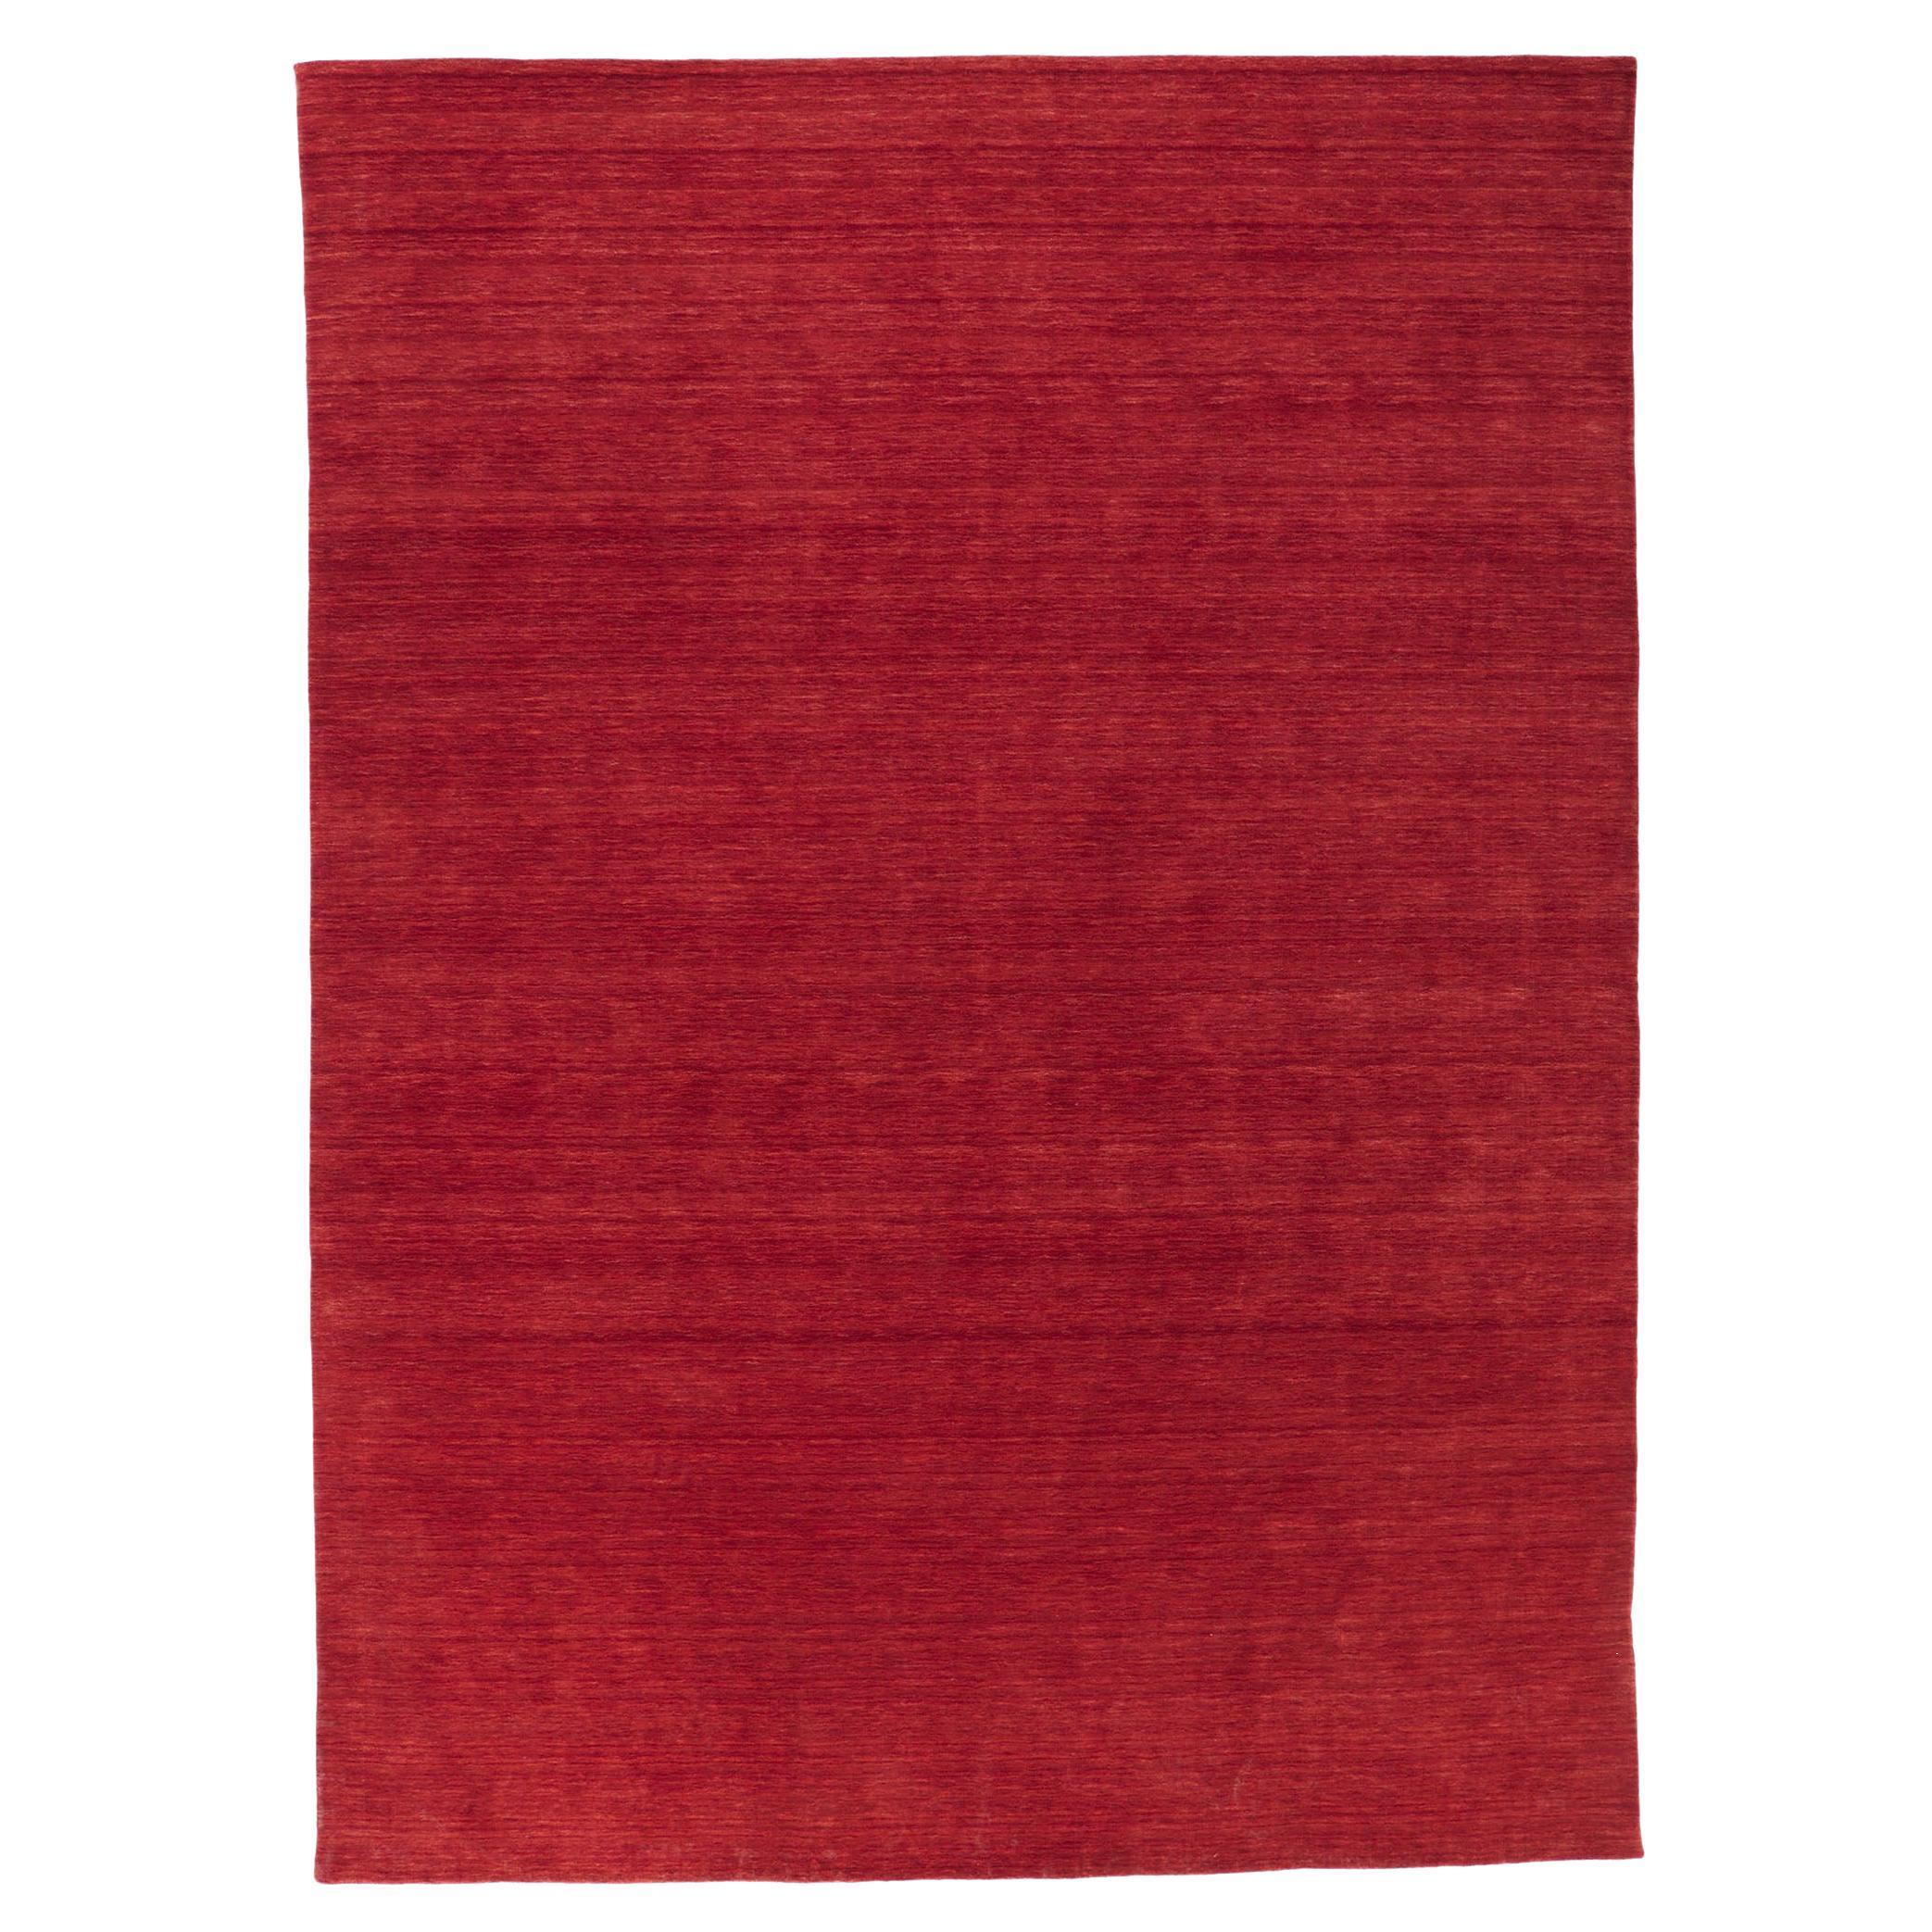 Nouveau tapis rouge contemporain de style moderne